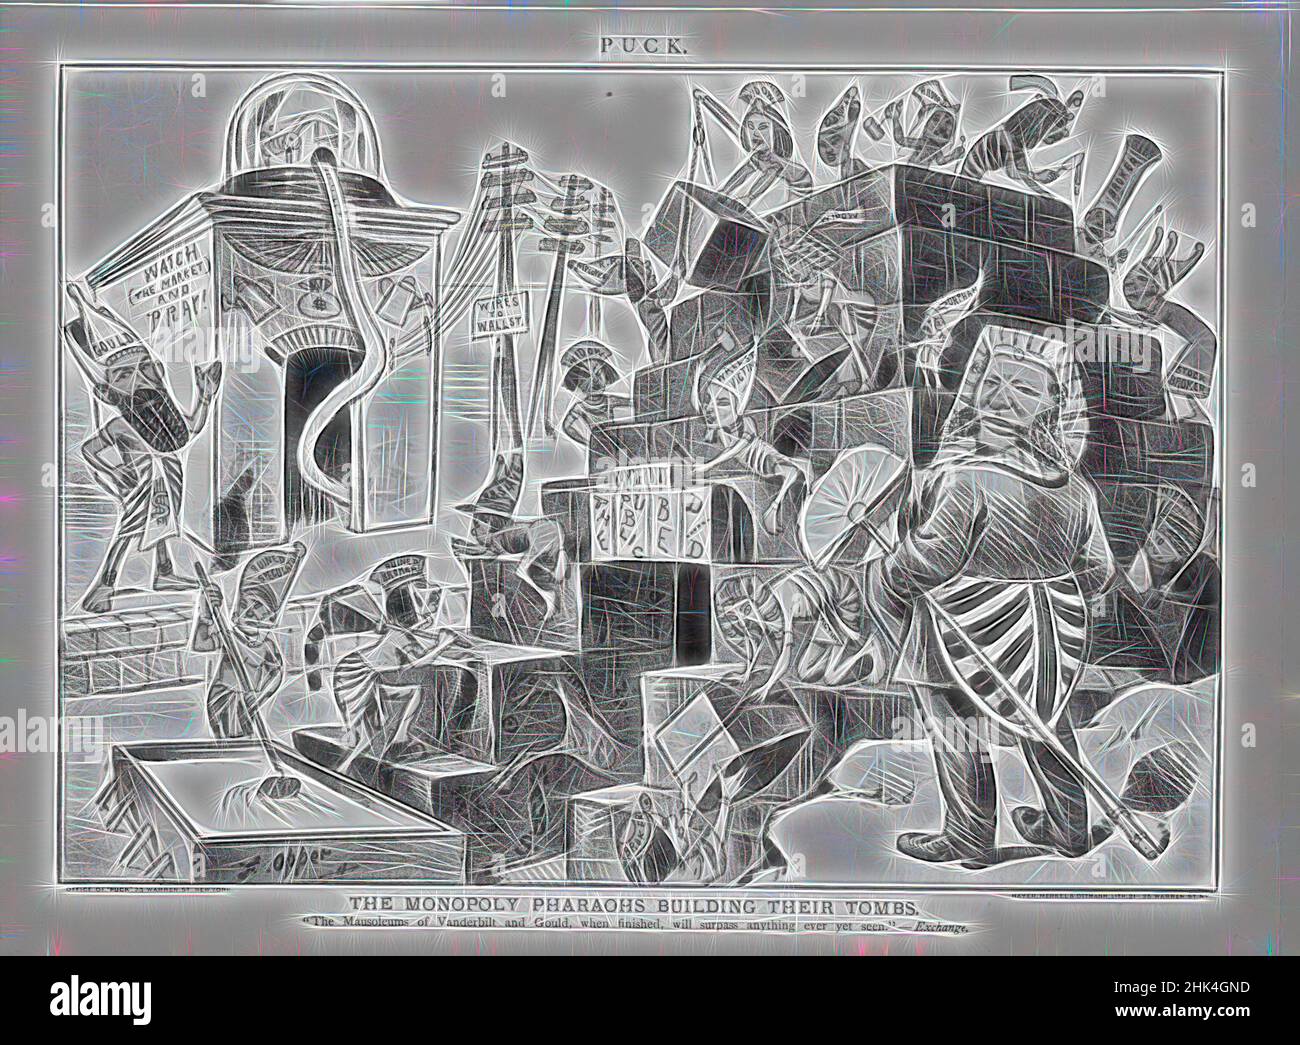 Ispirato da Cartoon, il monopolio Pharoah costruire le loro tombe, Frederick Burr Opper, americano, 1857-1937, carta stampata, 1883, 9 13/16 x 13 3/16 pollici, 24,9 x 33,5 cm, reinventato da Artotop. L'arte classica reinventata con un tocco moderno. Design di calda e allegra luminosità e di raggi di luce. La fotografia si ispira al surrealismo e al futurismo, abbracciando l'energia dinamica della tecnologia moderna, del movimento, della velocità e rivoluzionando la cultura Foto Stock